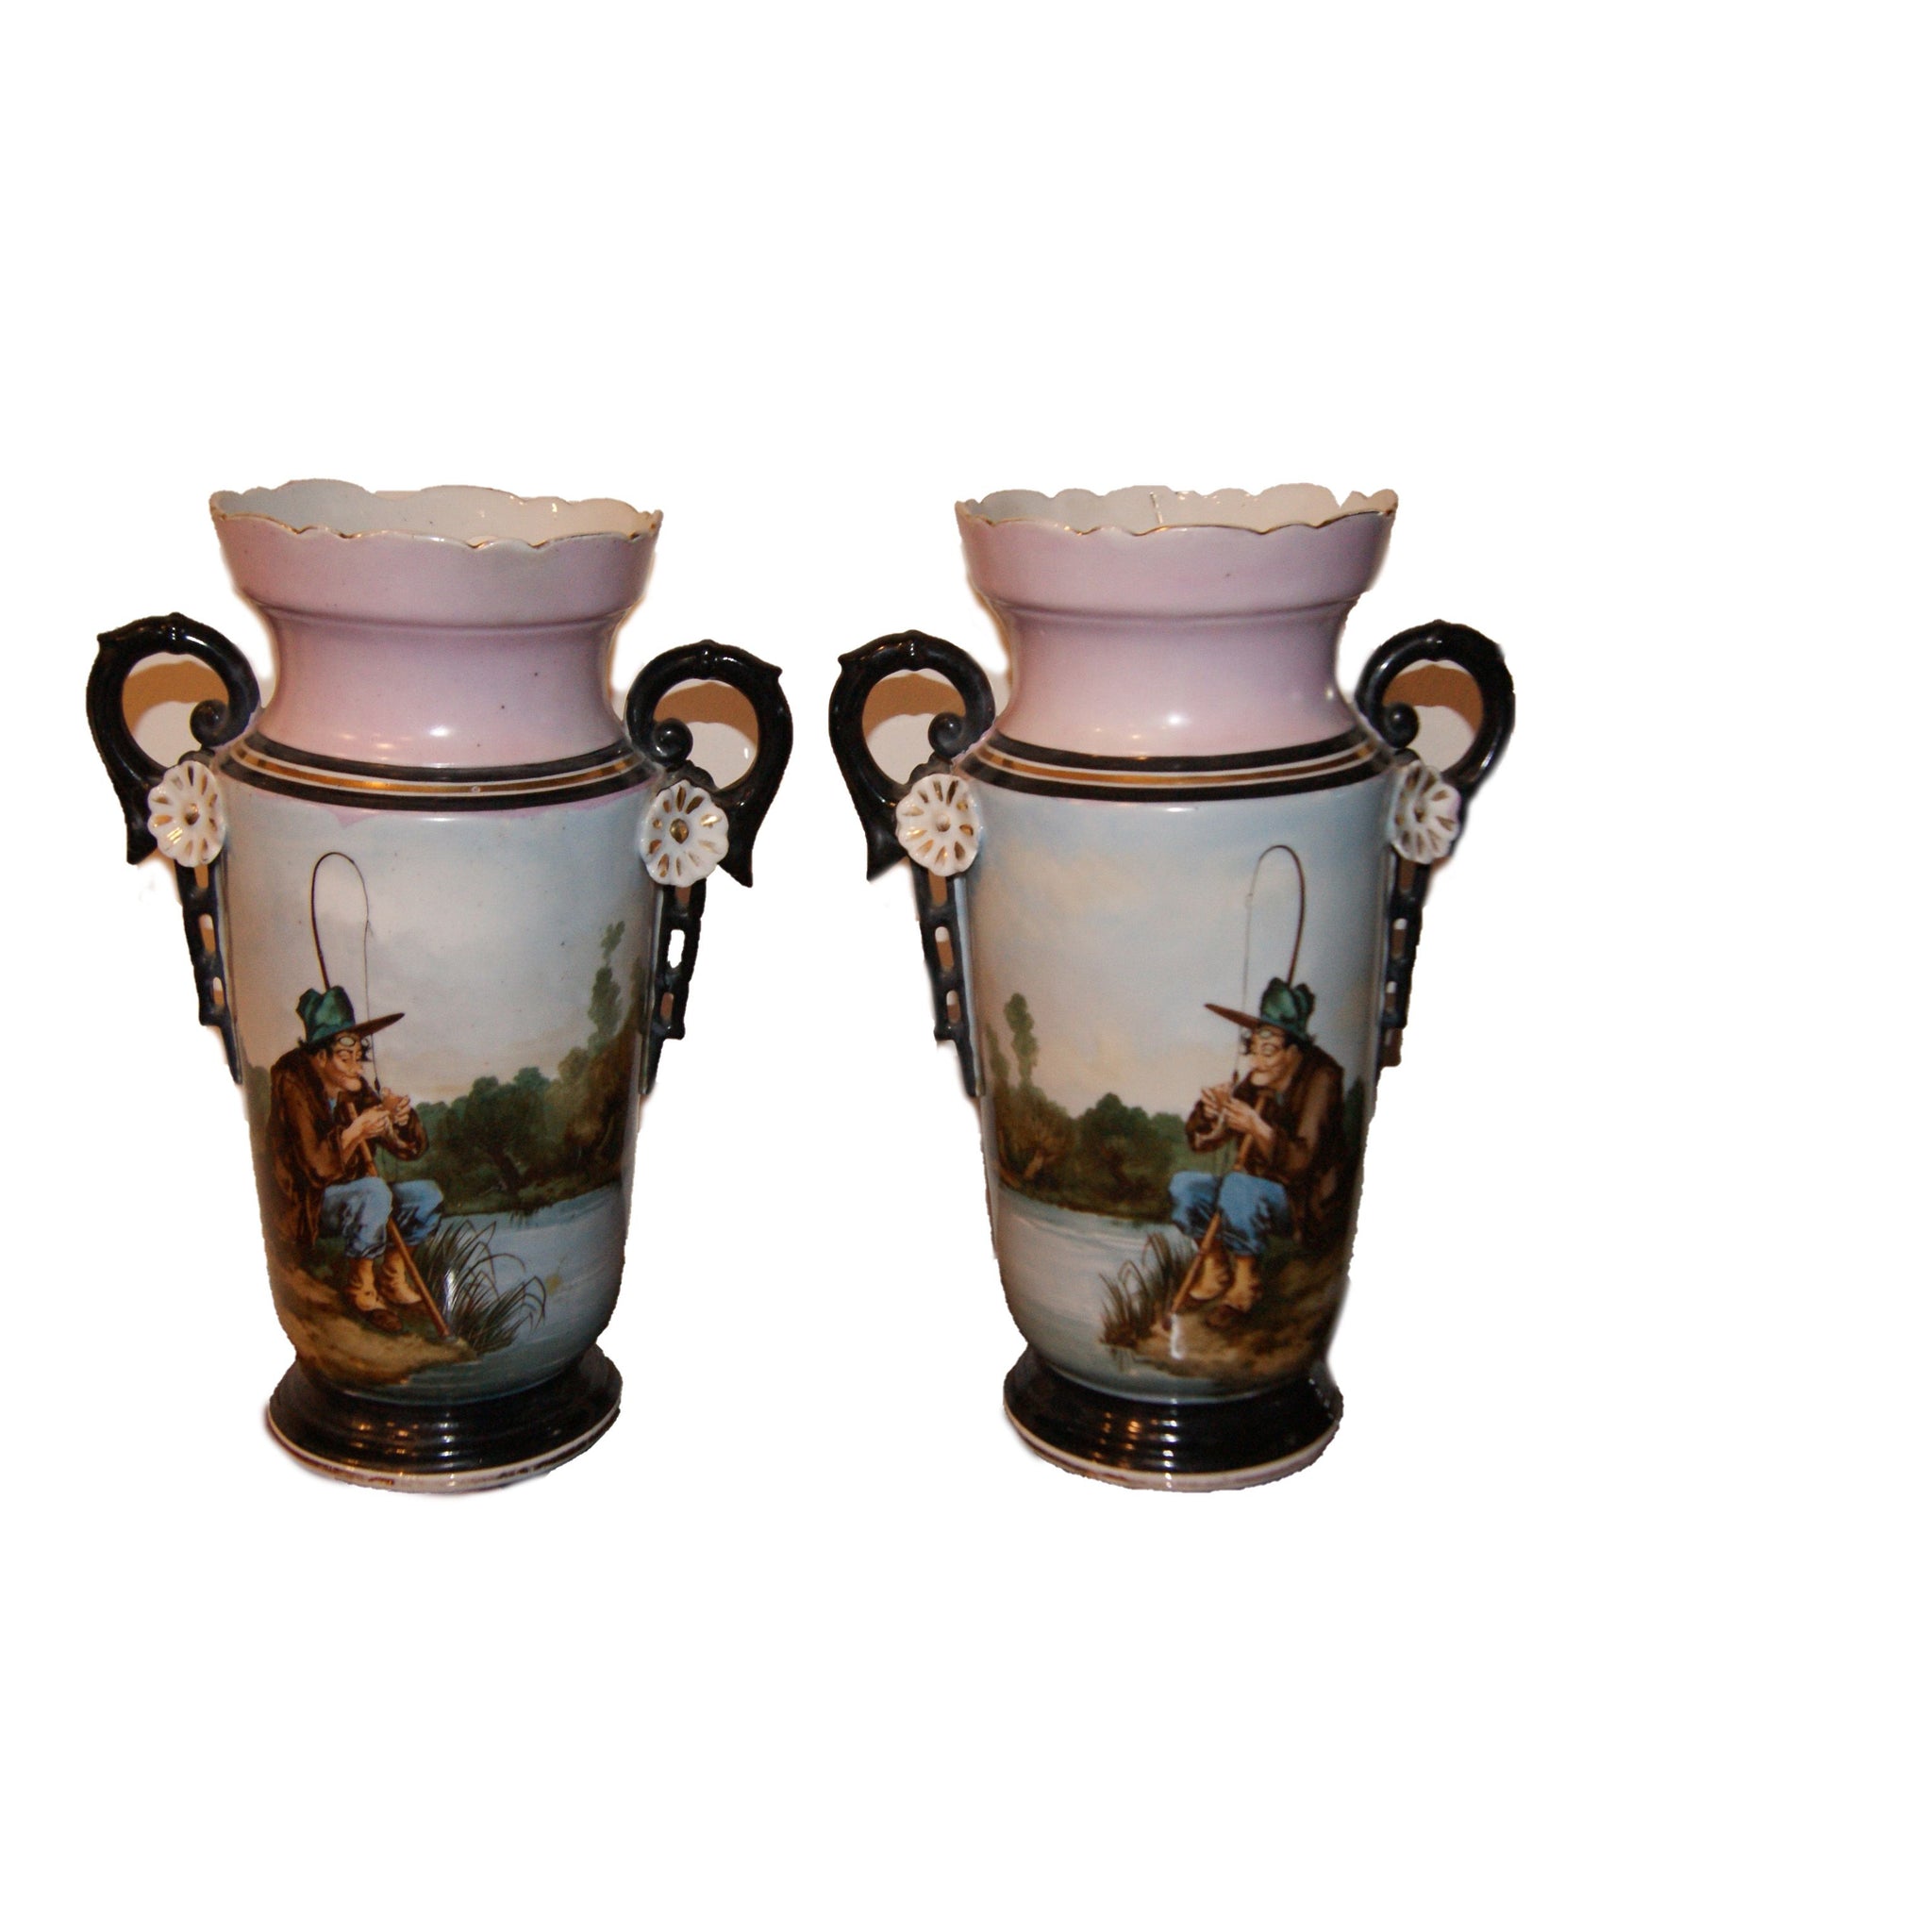 Pair of antique pink Art Nouveau vases